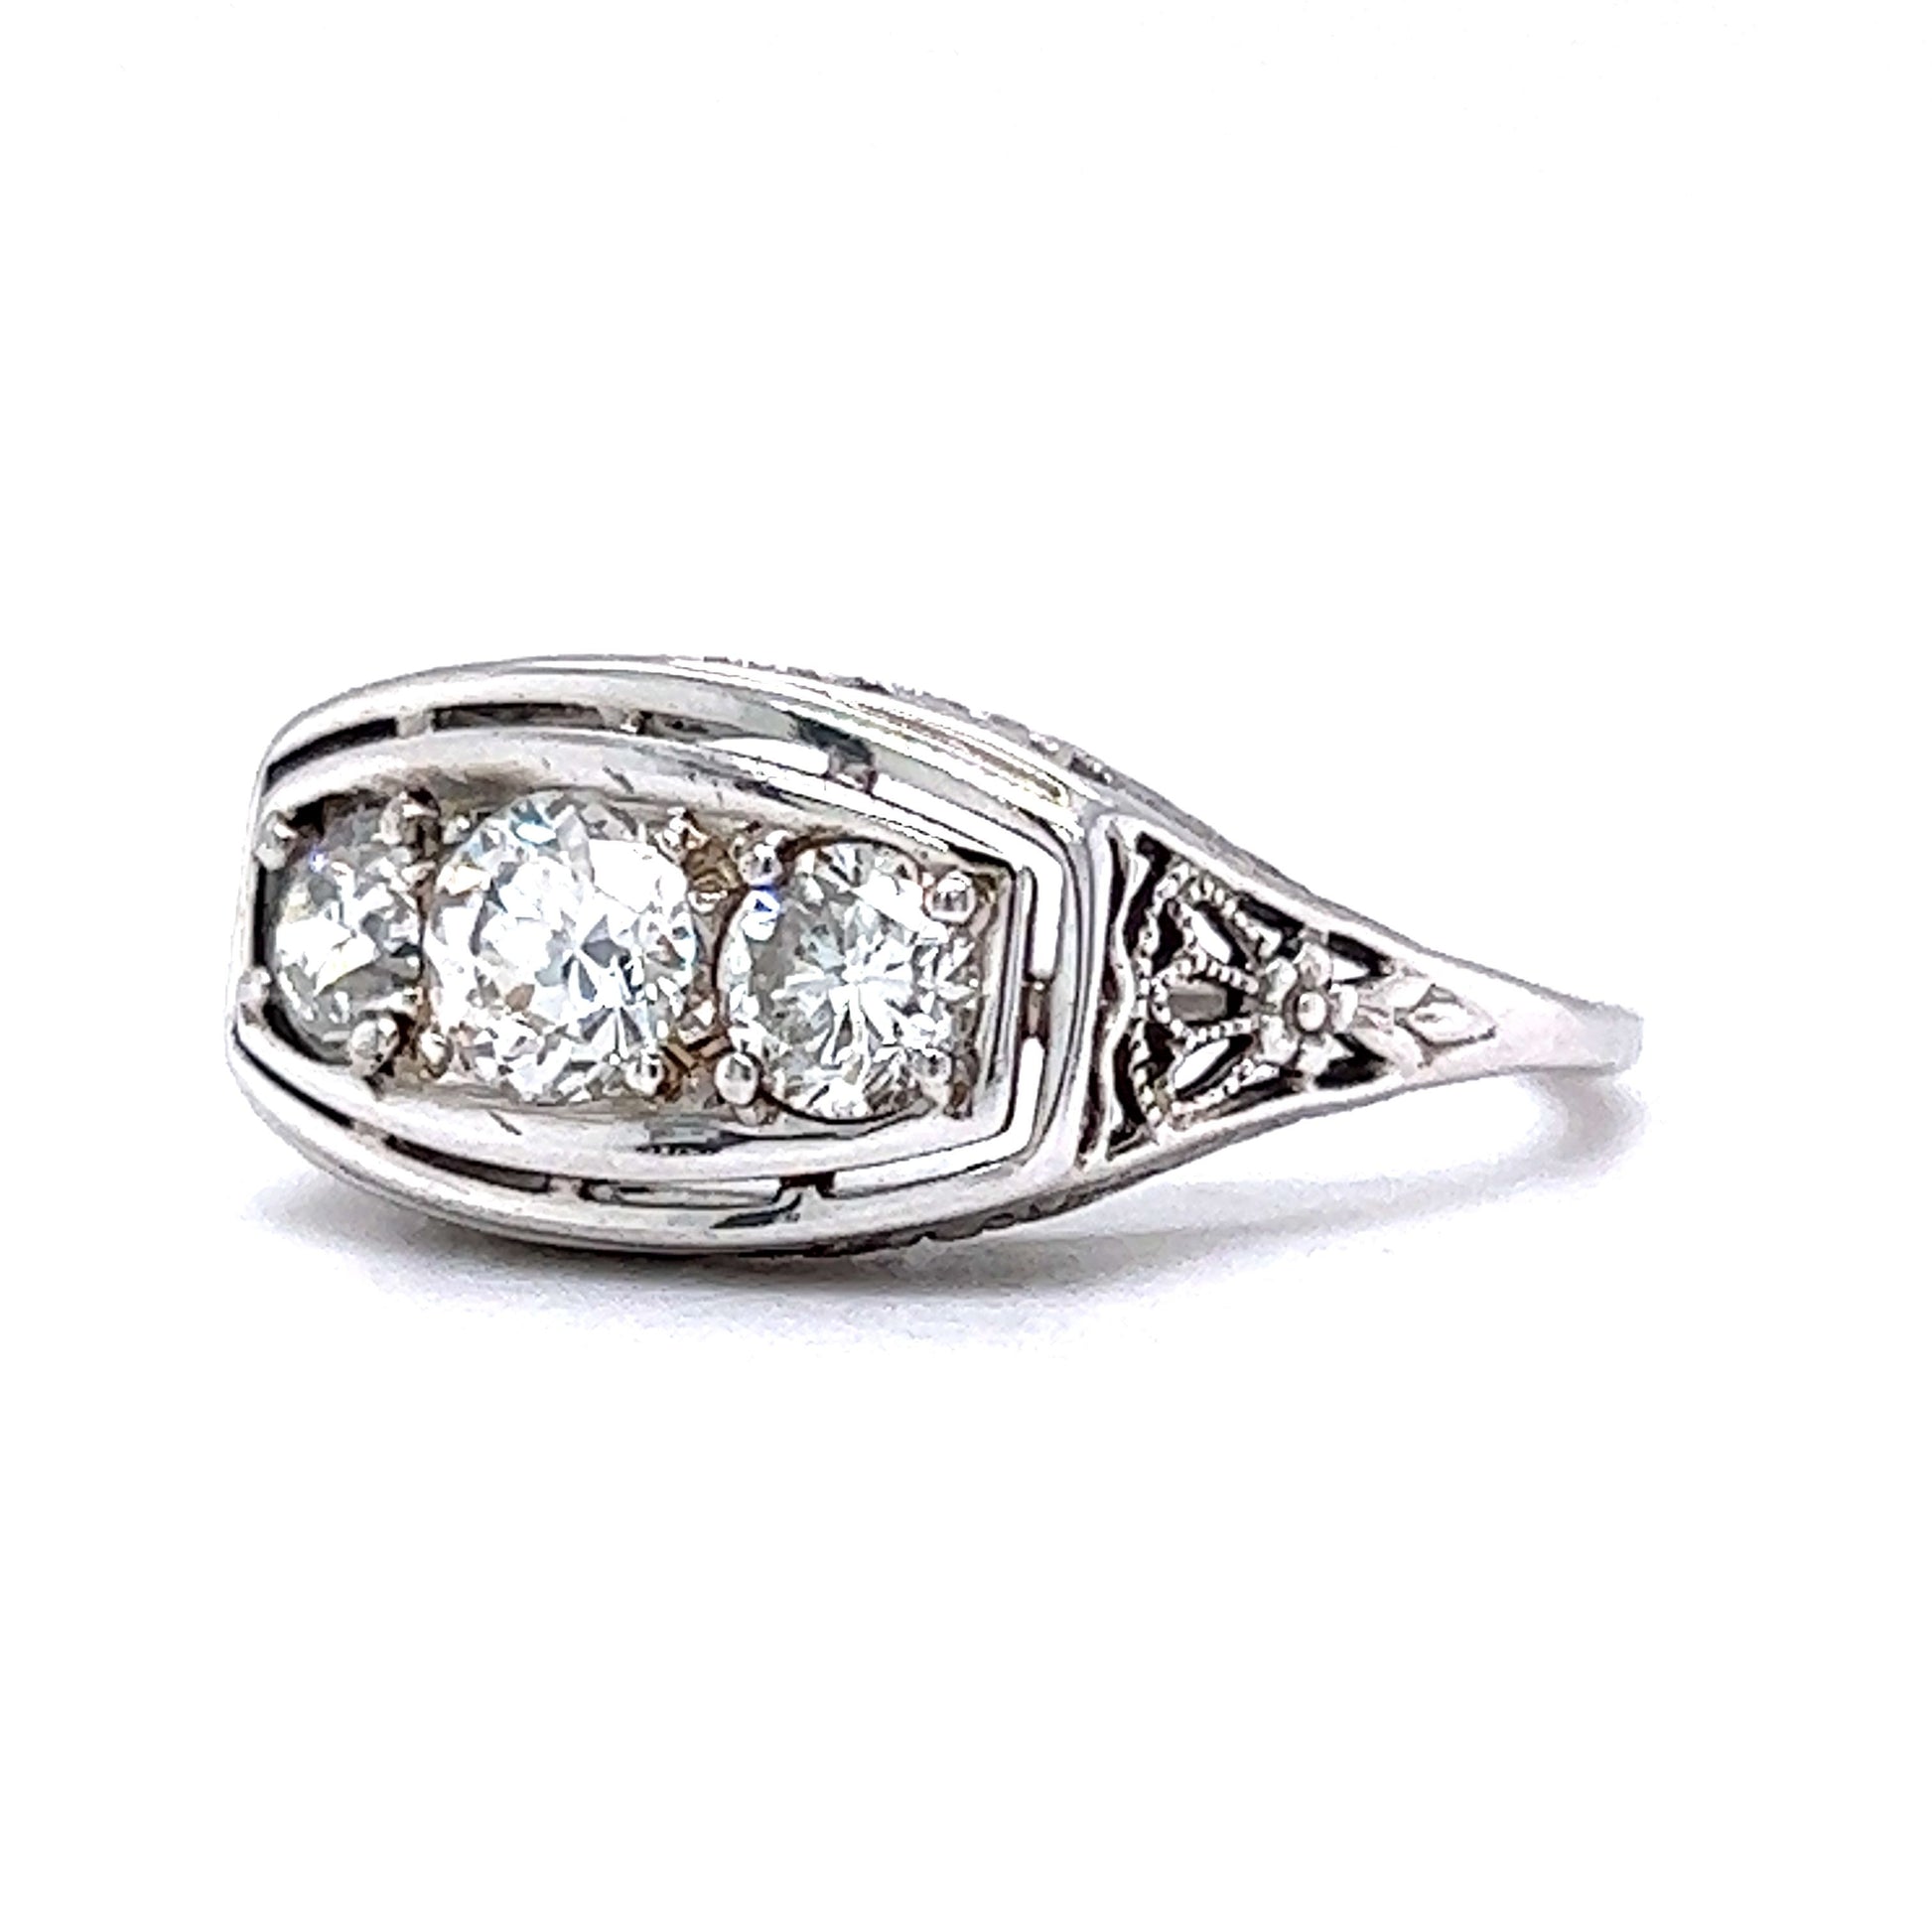 Vintage Deco Three Stone Diamond Ring in 18k White Gold